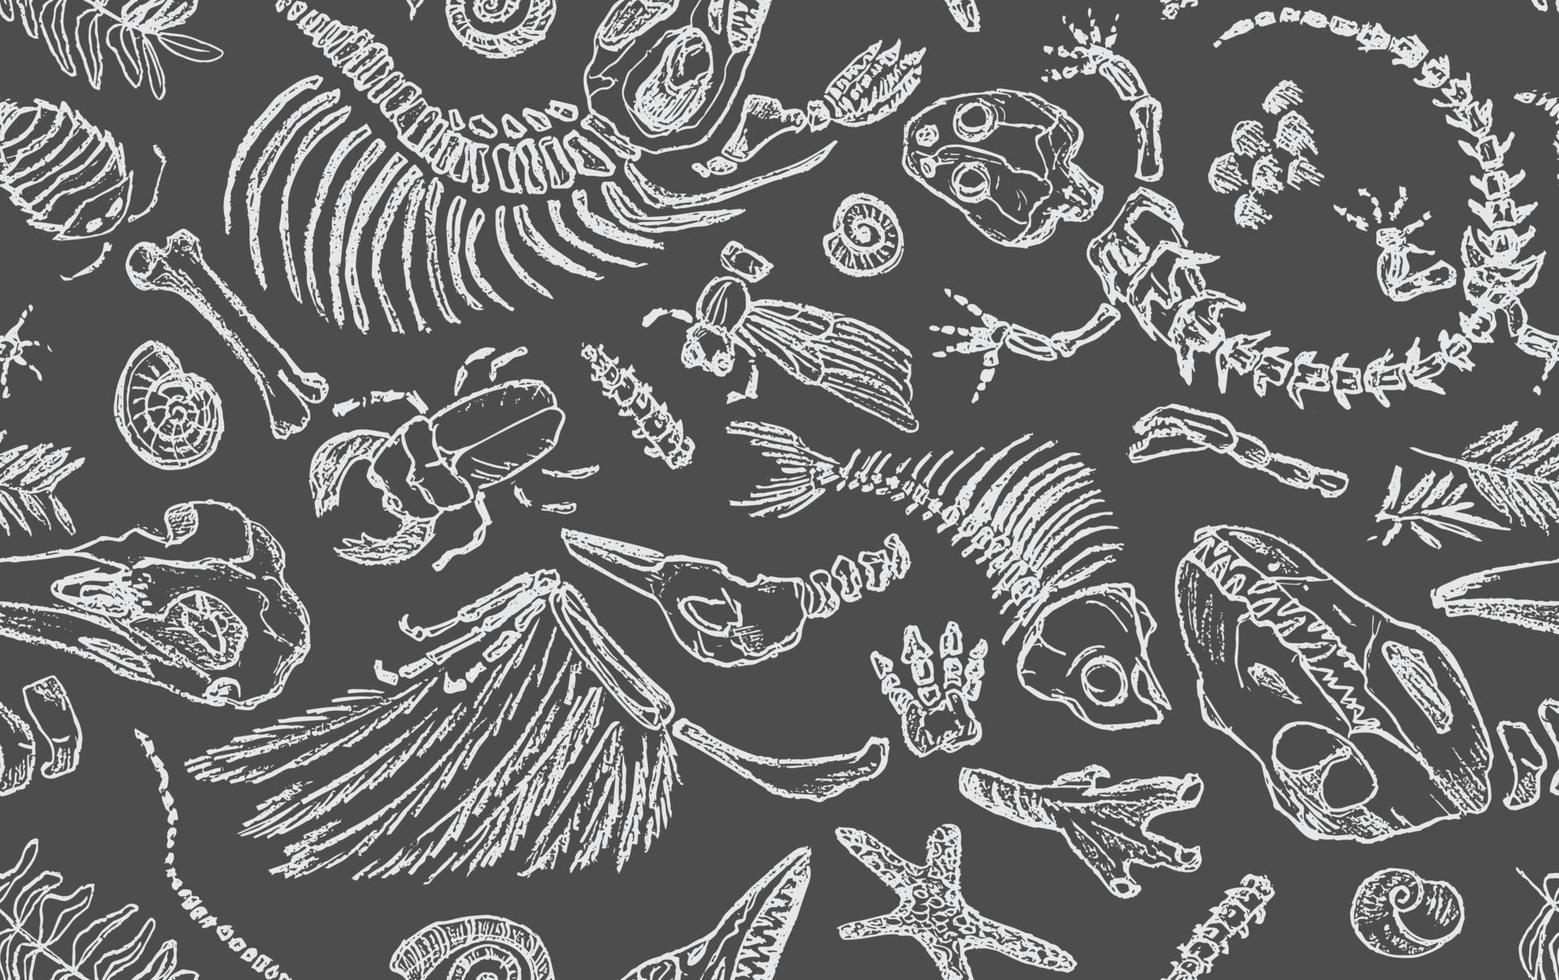 el contorno de tiza blanca aislada imprime esqueletos de animales prehistóricos, insectos y plantas. arte dibujado a mano realista de patrones sin fisuras. ilustración vectorial vector